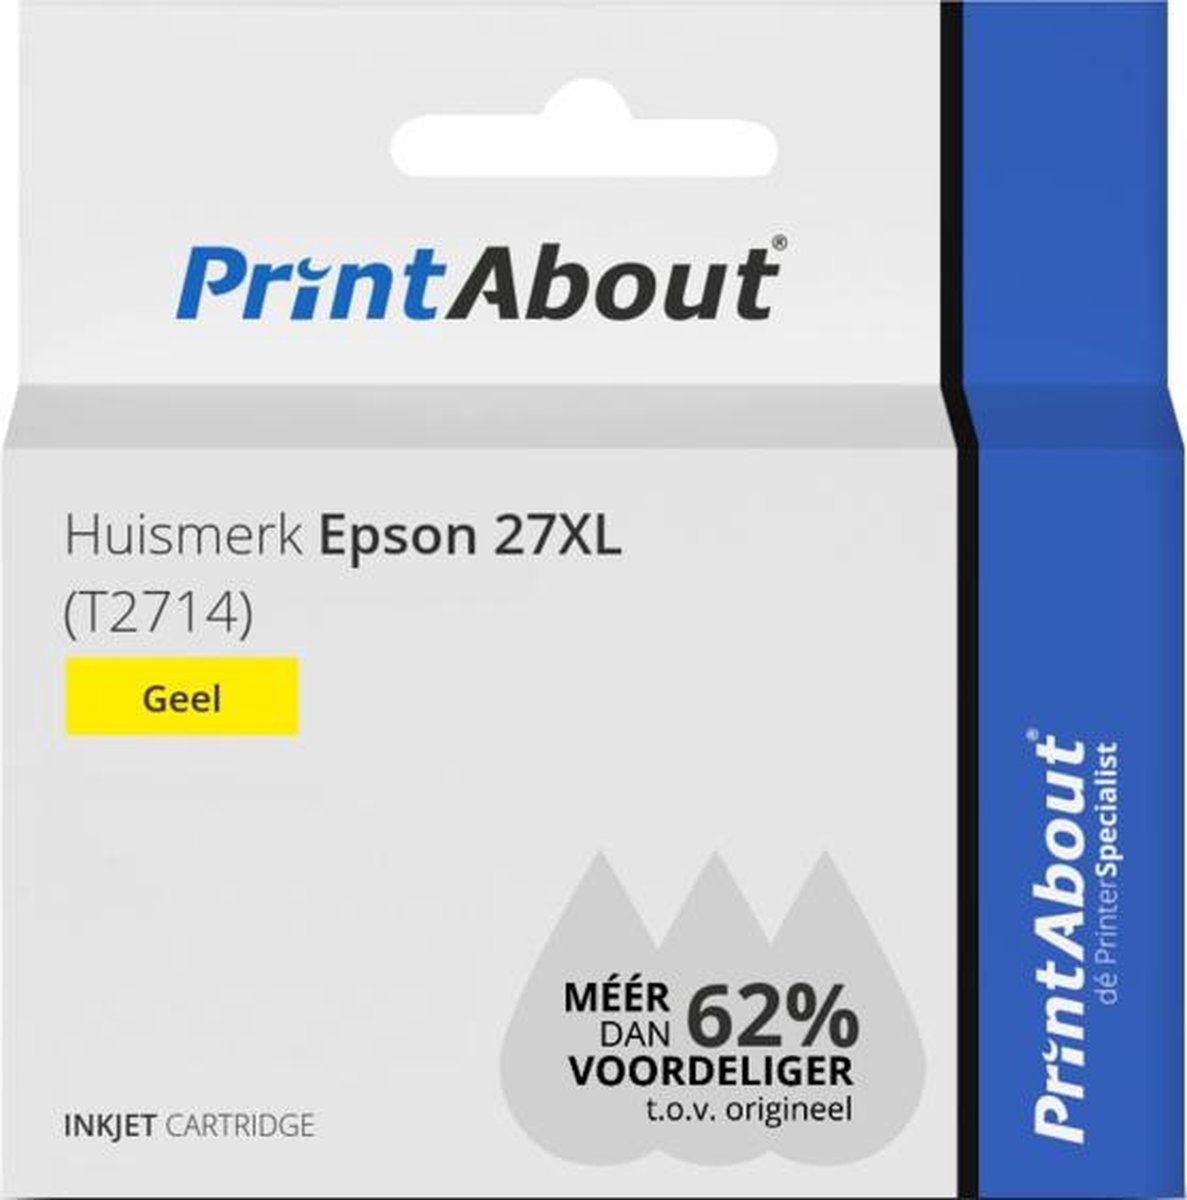 PrintAbout Huismerk Epson 27XL (T2714) Inktcartridge Hoge capaciteit - Geel